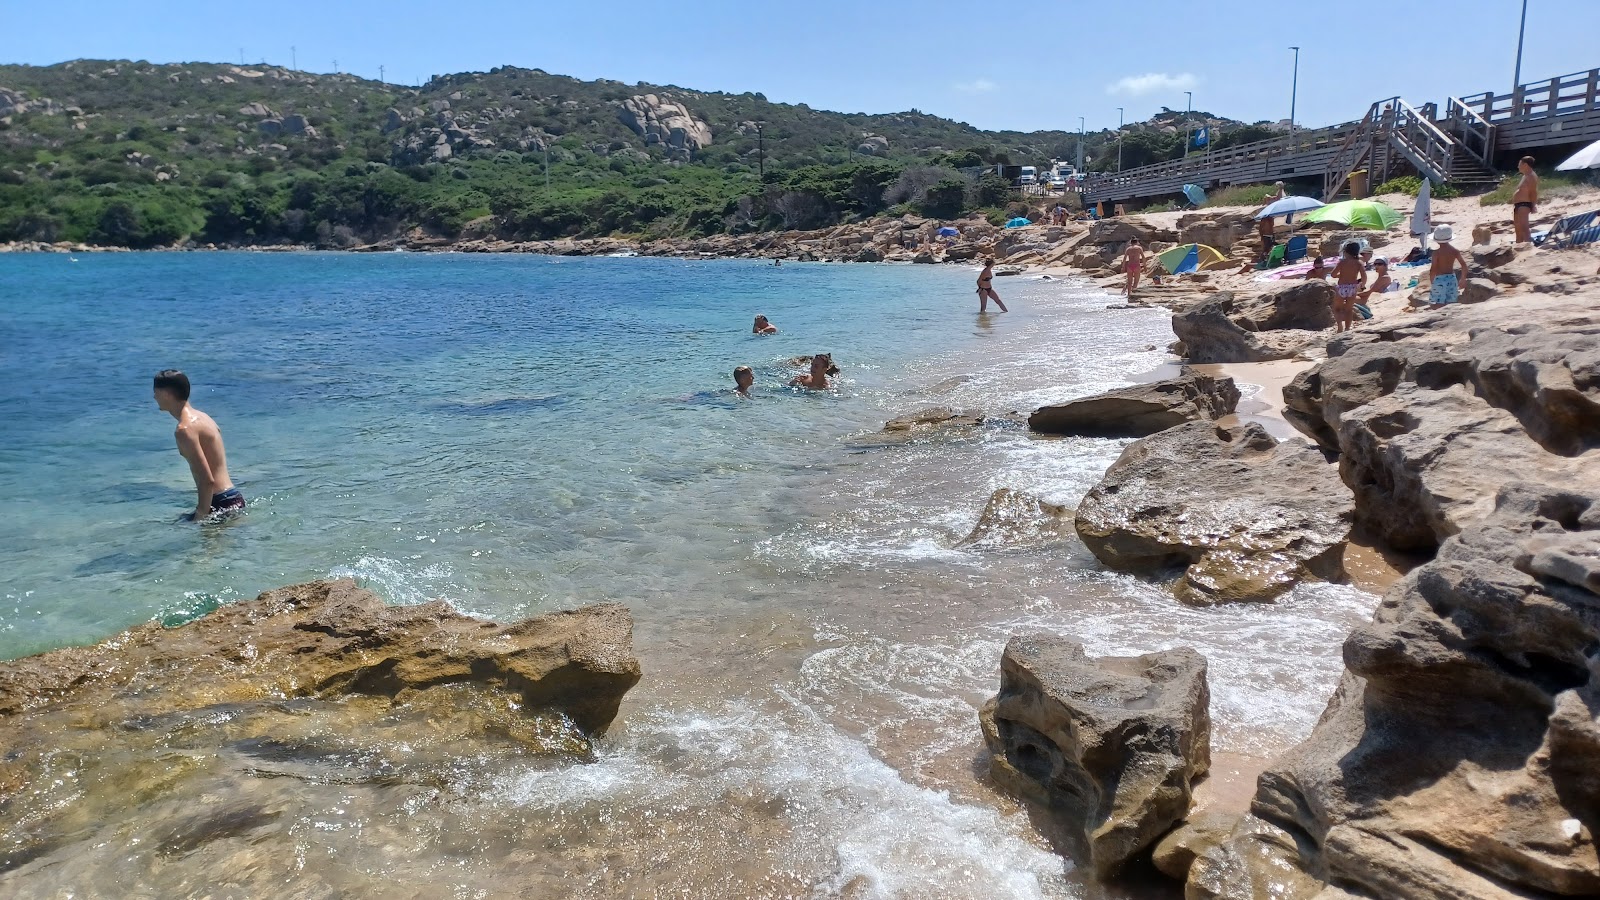 Photo of Spiaggia Rena di Levante with straight shore